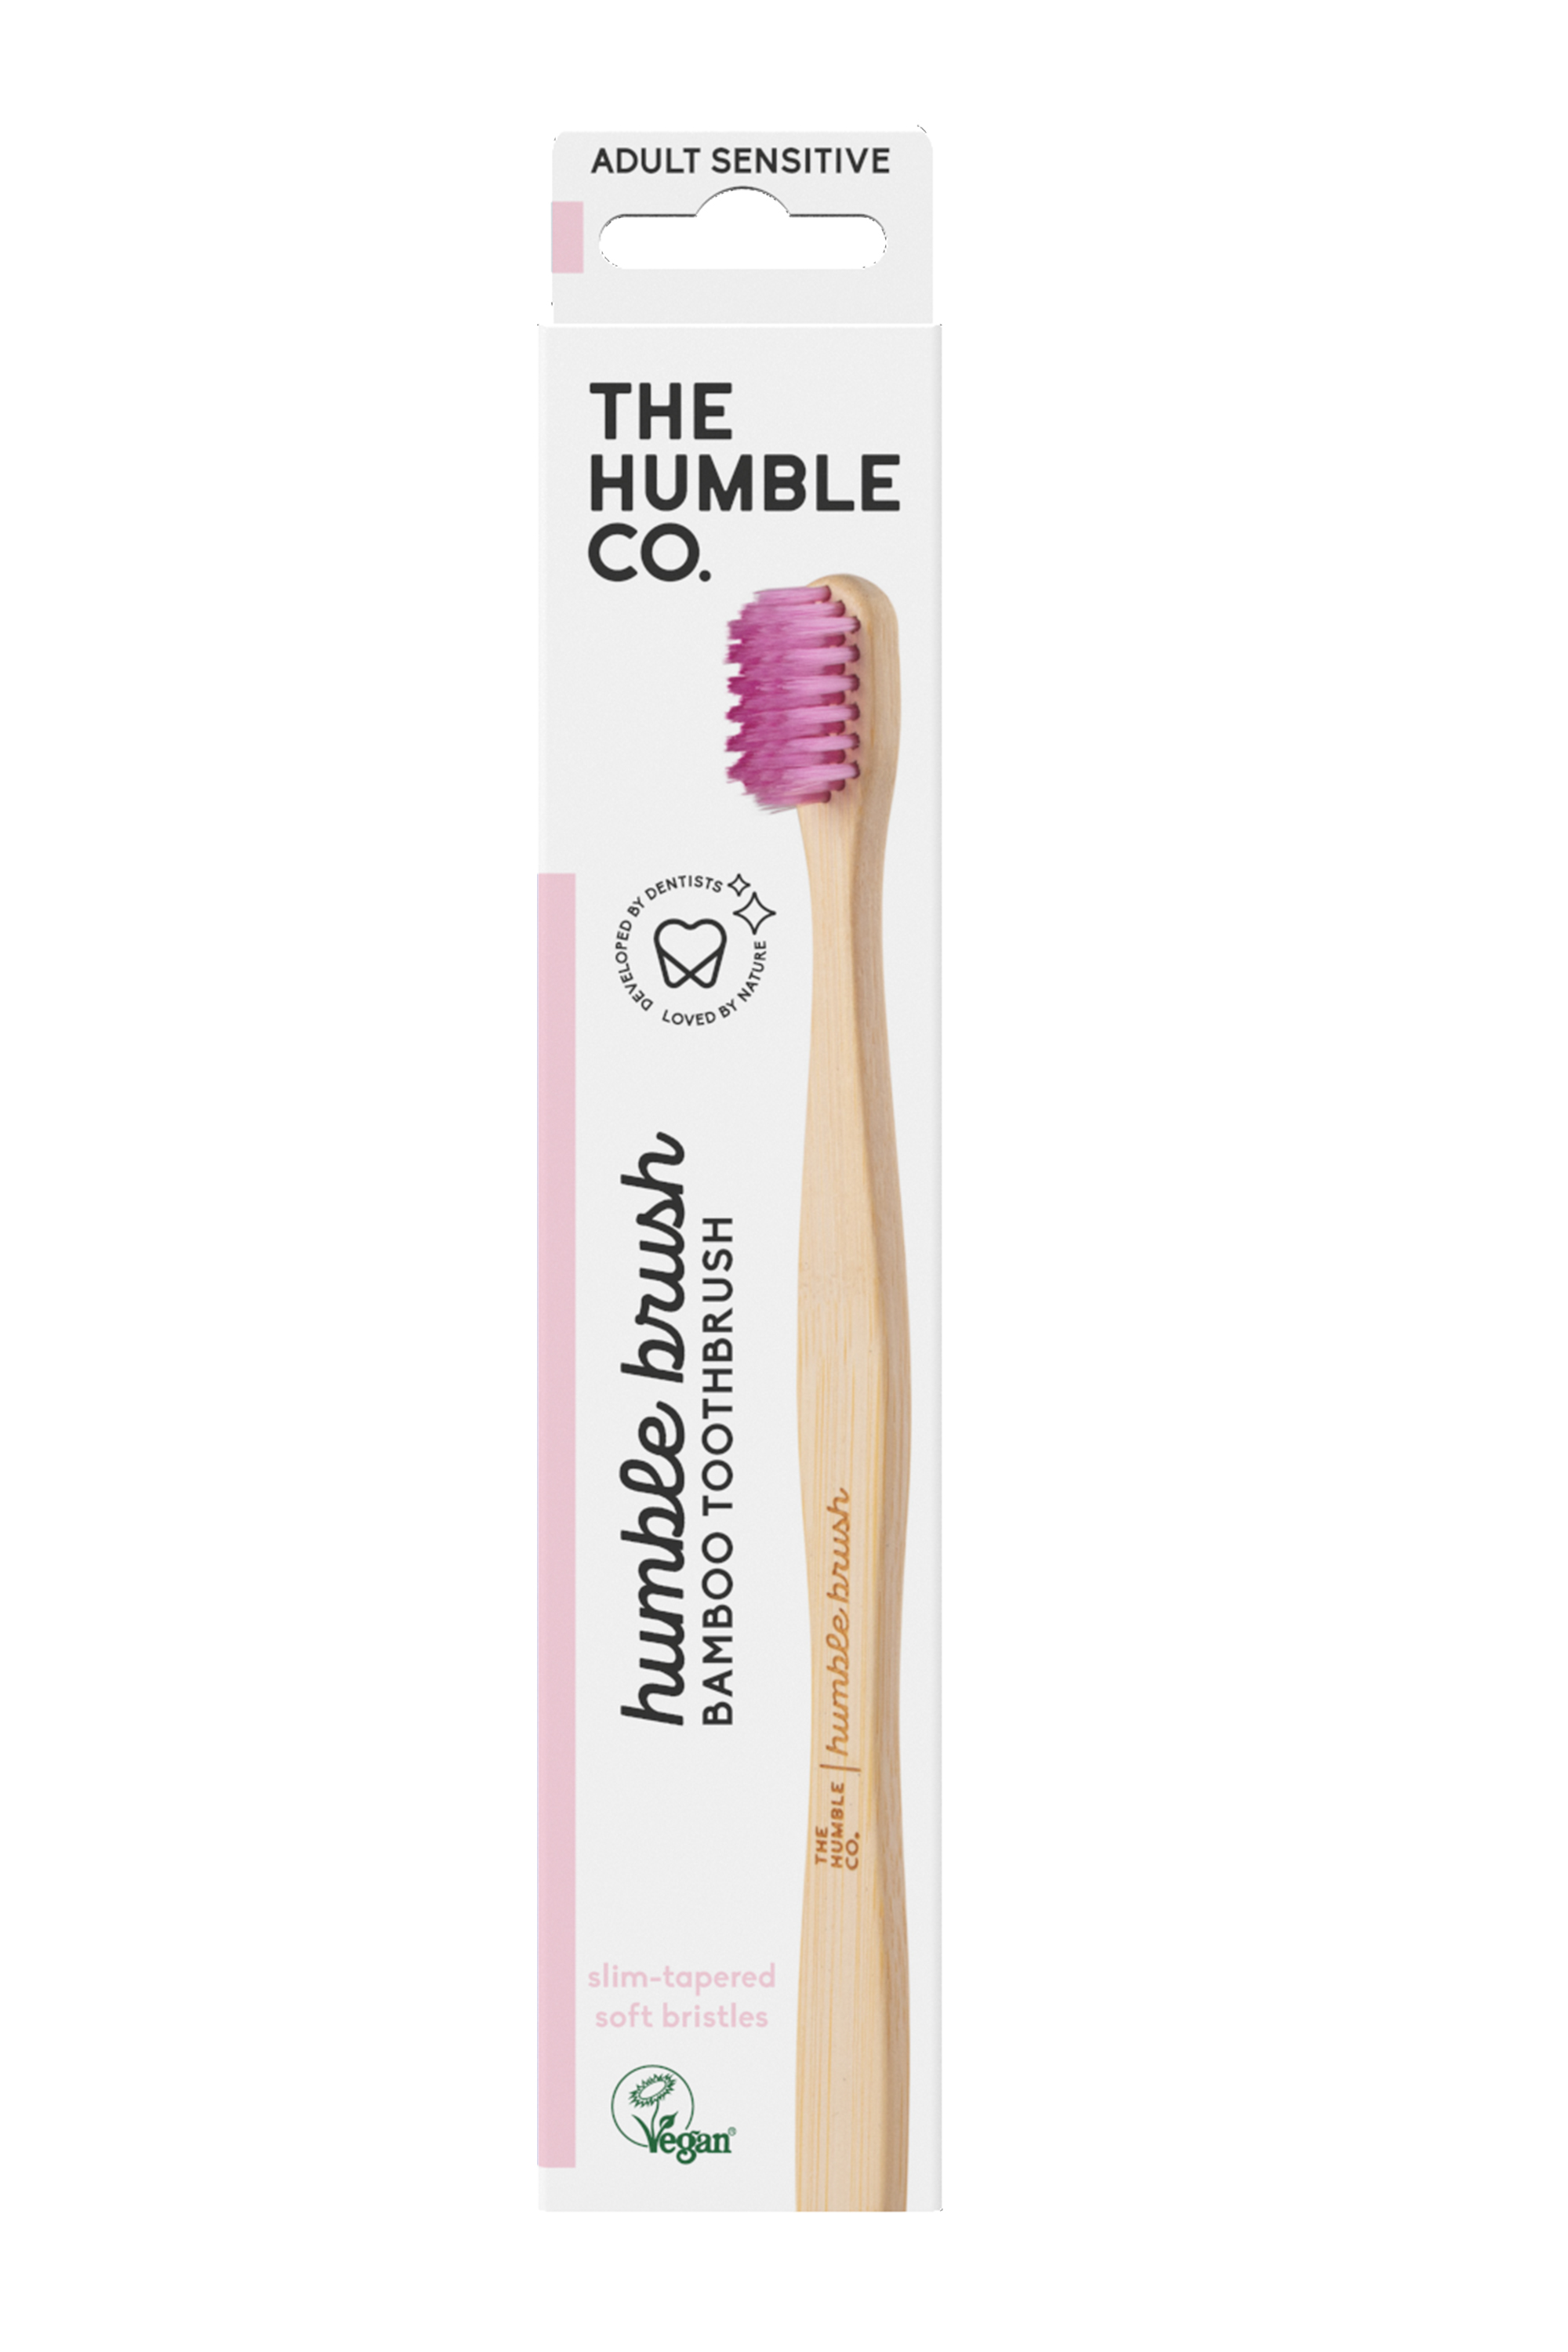 The Humble Co. Humble Brush Adult Sensitive, Purple, 1 stk